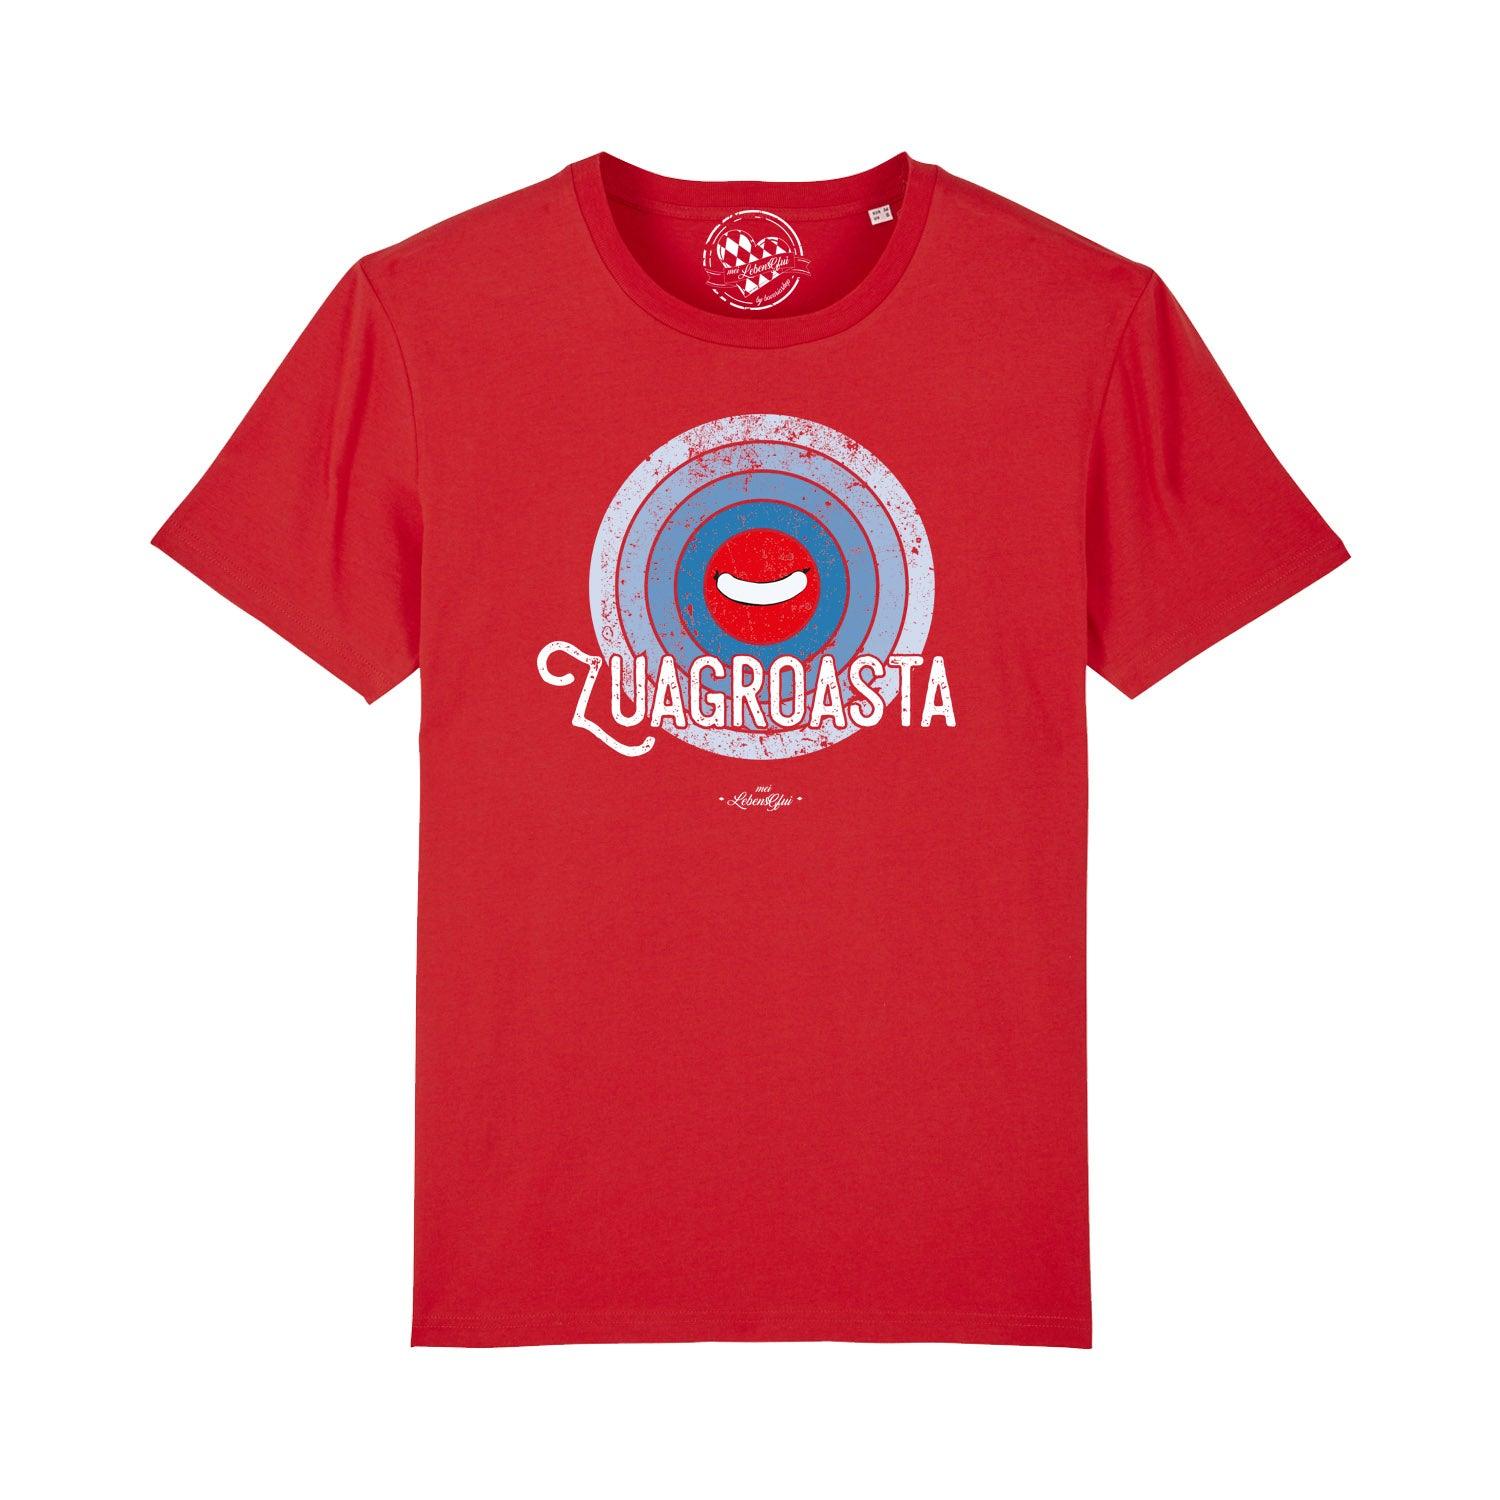 Herren T-Shirt "Zuagroasta" - bavariashop - mei LebensGfui